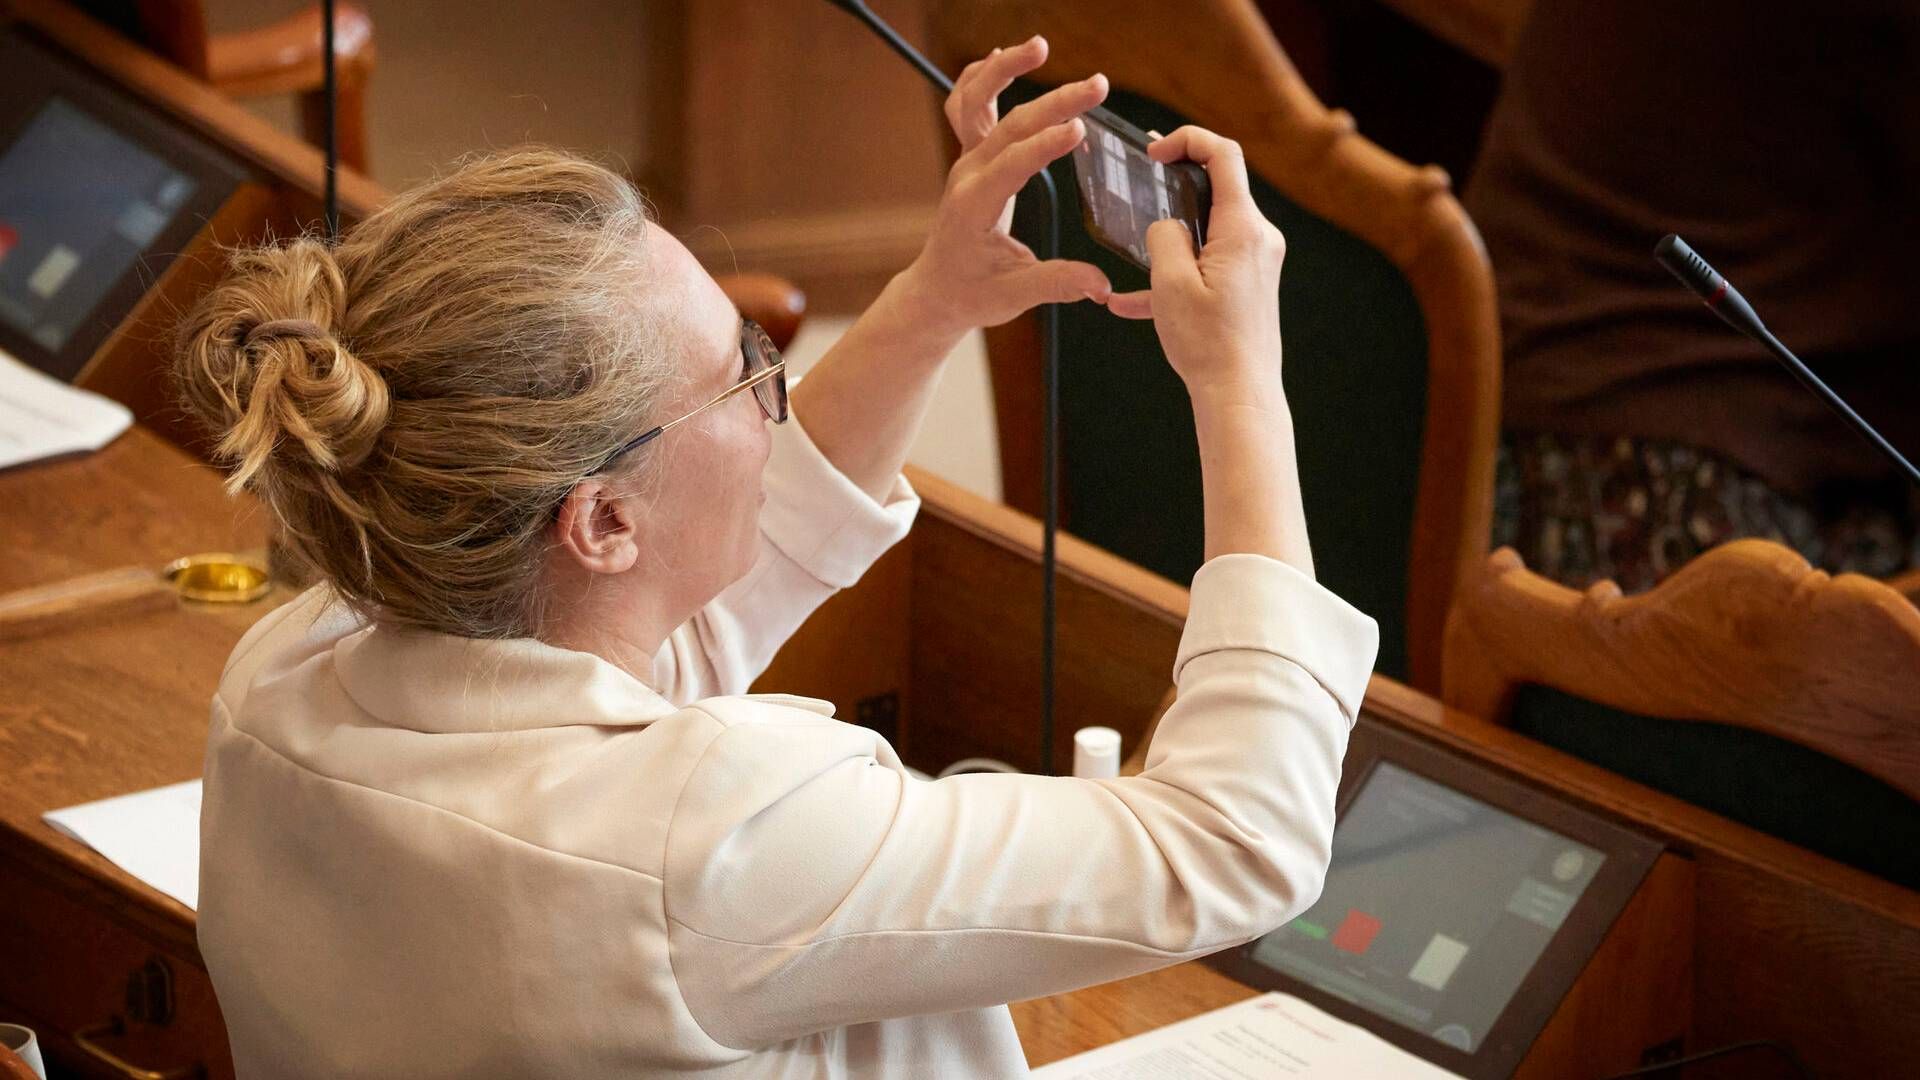 SF’s techordfører, Lisbeth Bech-Nielsen, foreslår, at Folketingets Præsidium laver fælles retningslinjer for brug af deepfake-videoer. | Foto: Jens Dresling/Ritzau Scanpix